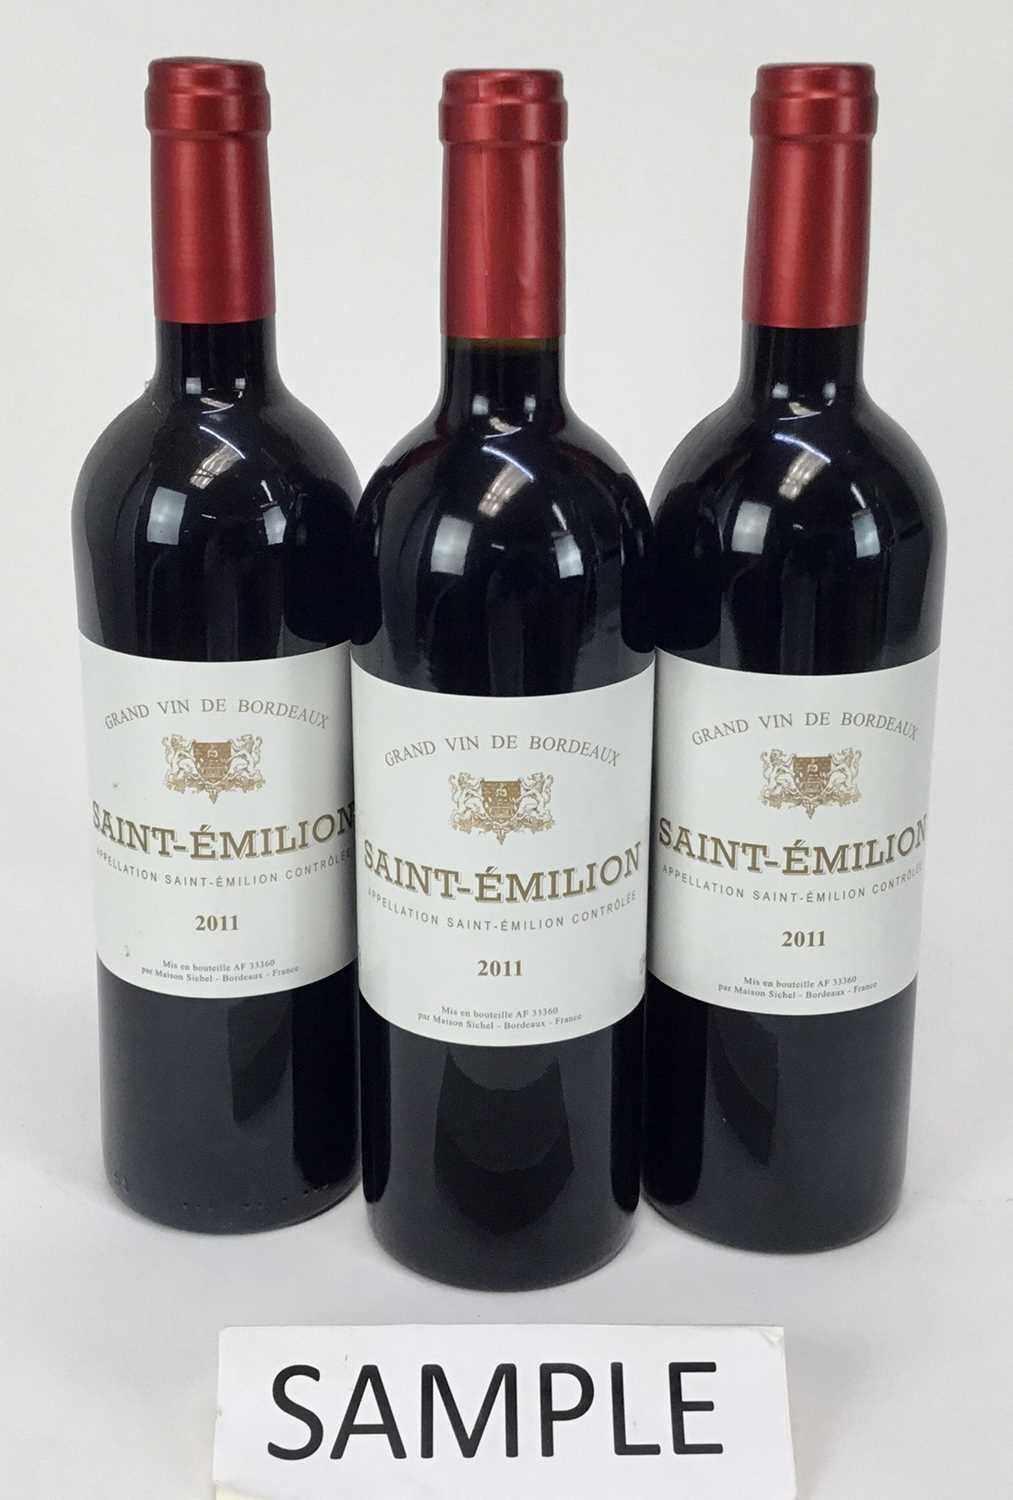 Lot 42 - Wine - twelve bottles, Grand Vin De Bordeaux Saint-Emilion 2011